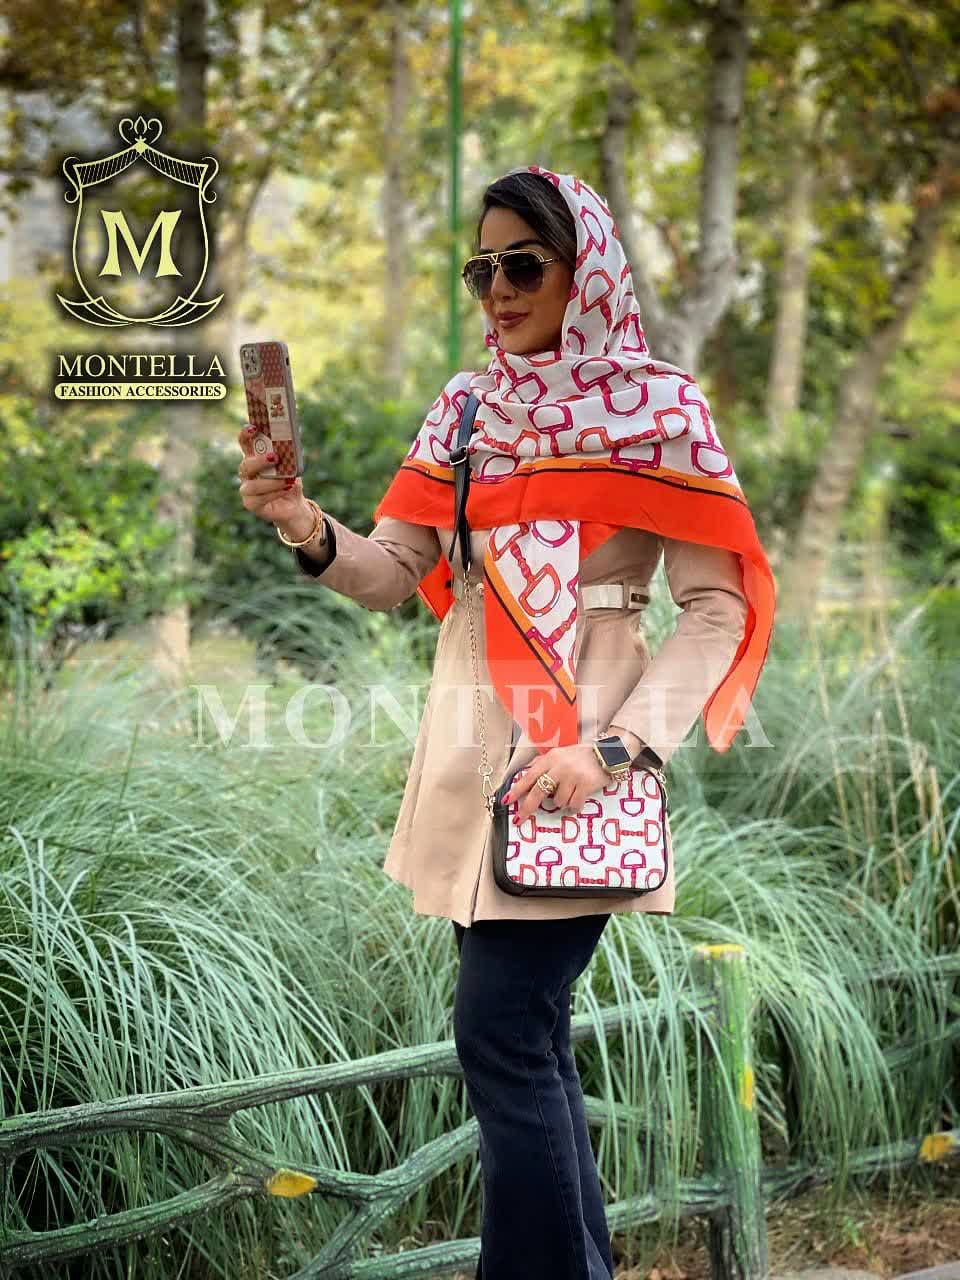 ست کیف و روسری زنانه طرح نلین رنگ نارنجی با کیف کوچک کیفیت عالی با ارسال رایگان کد mo426